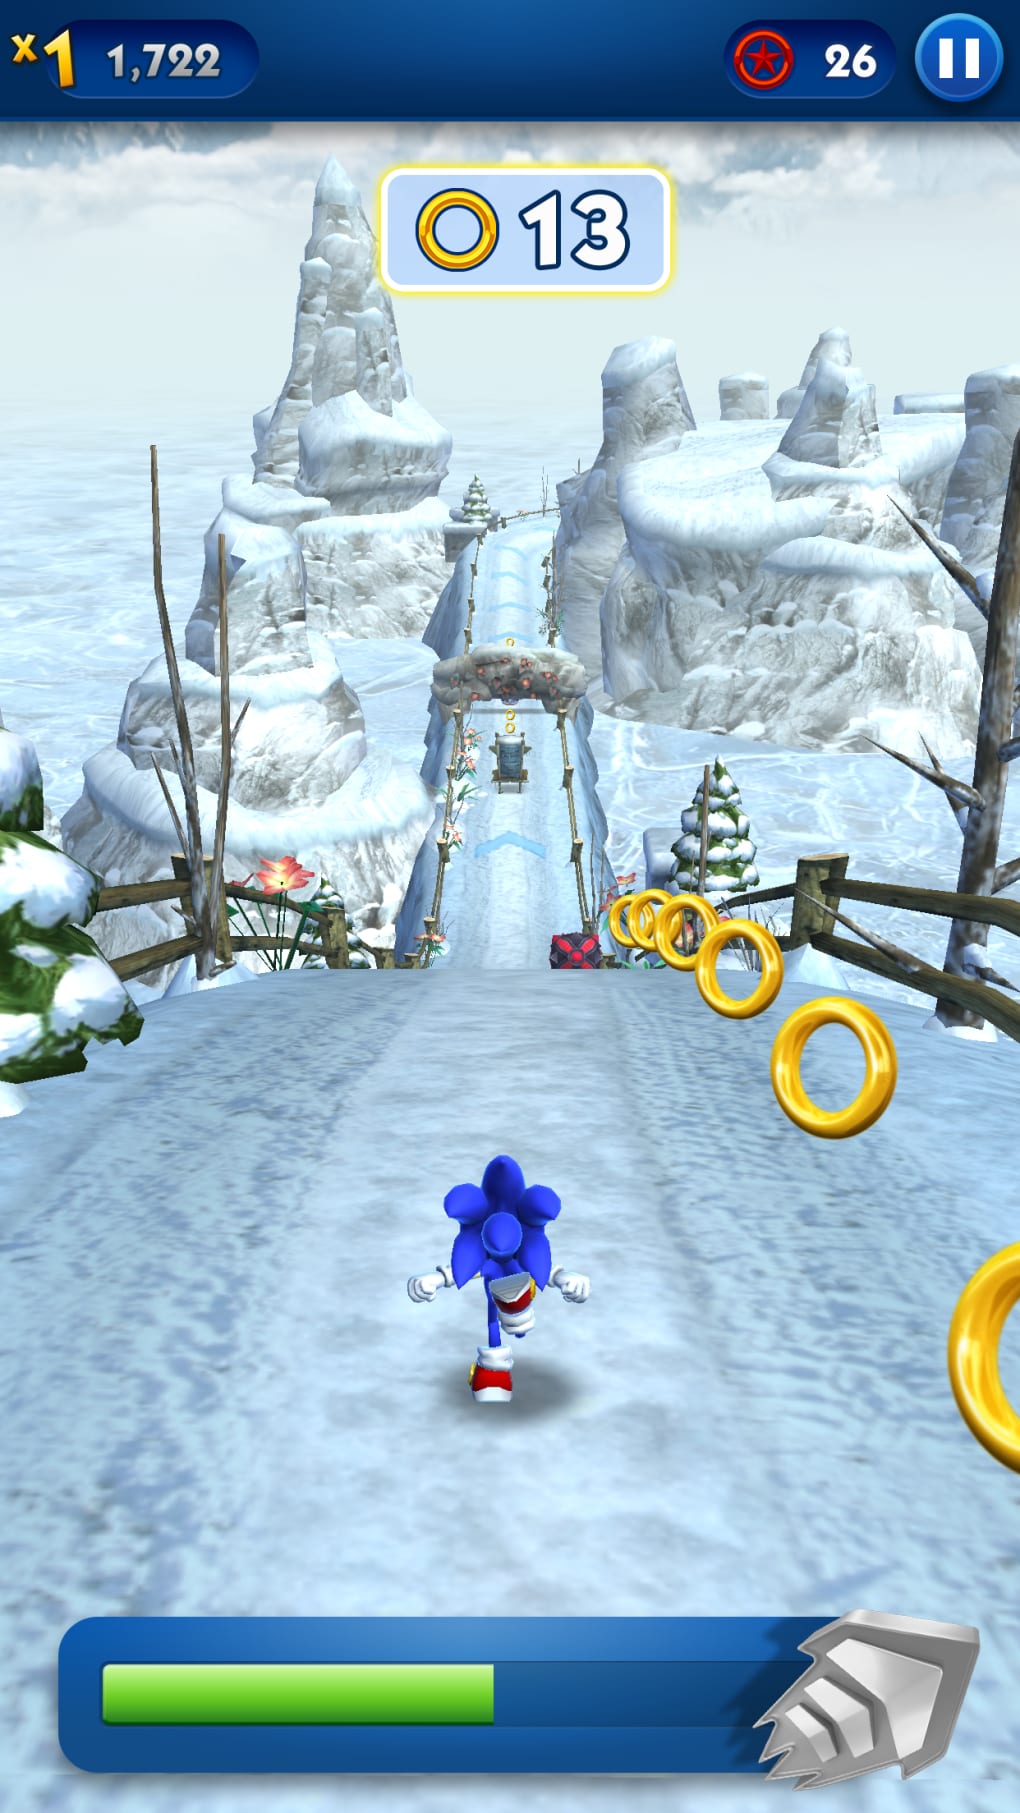 Sonic Dash Jogo de Corrida versão móvel andróide iOS apk baixar